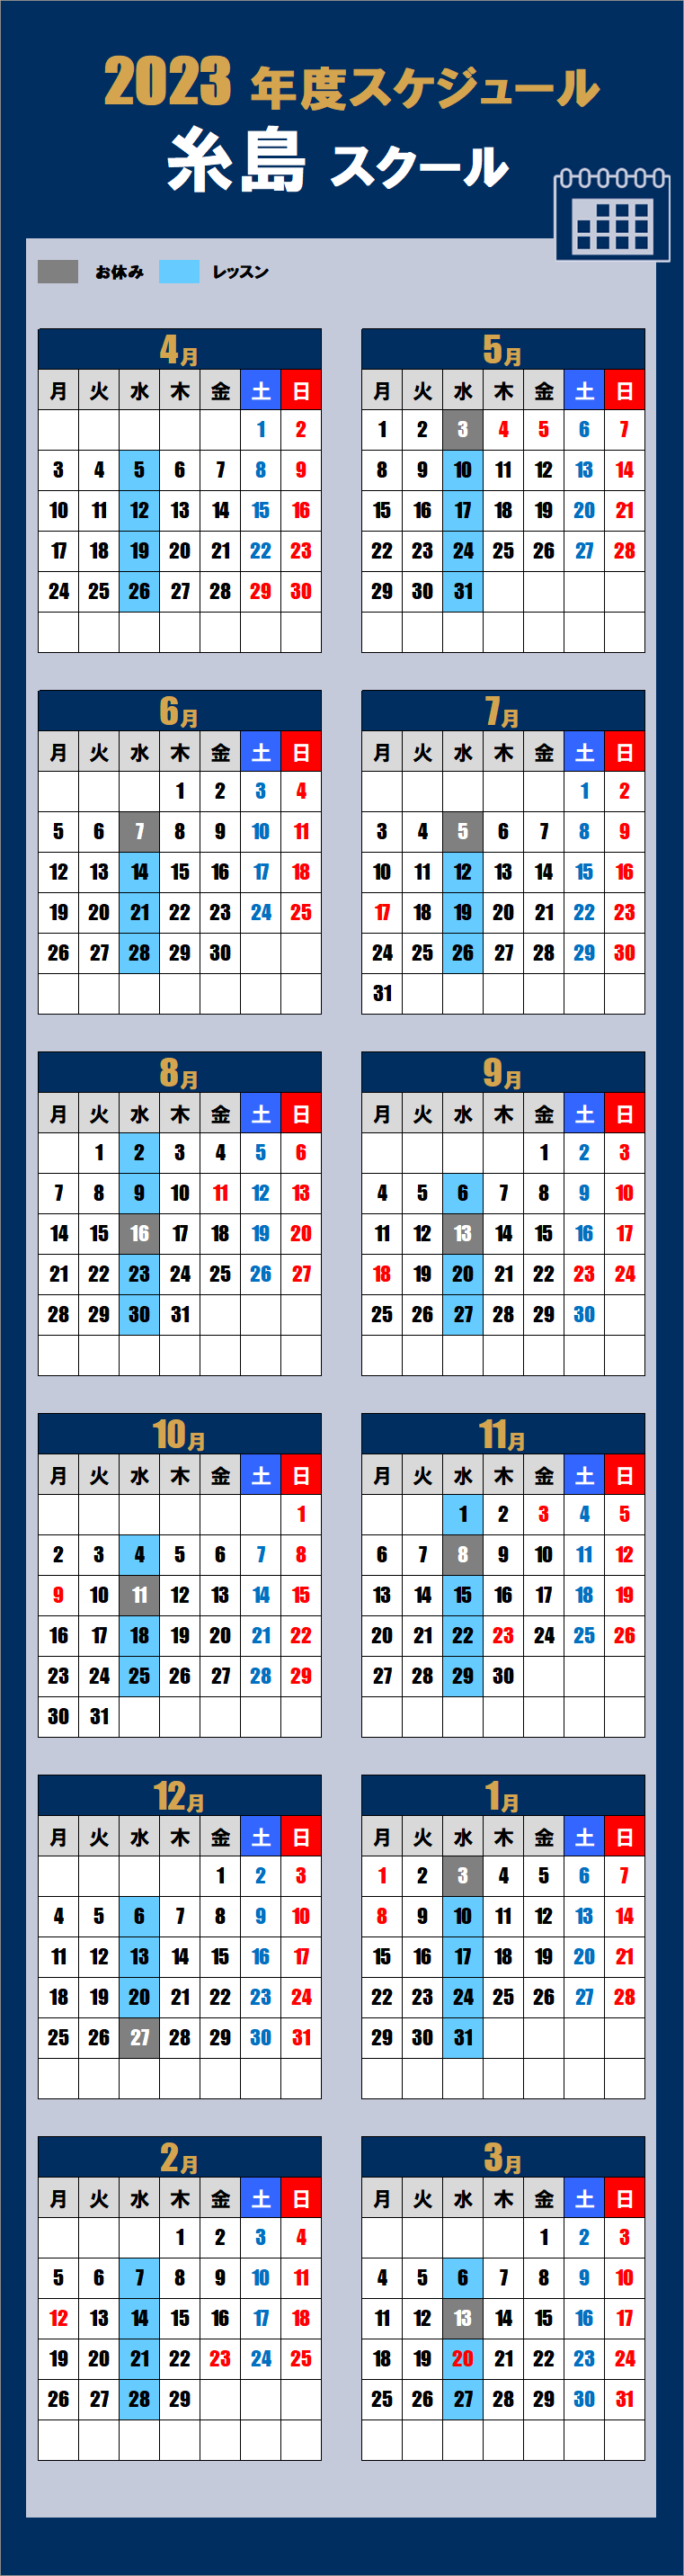 糸島スクールカレンダー